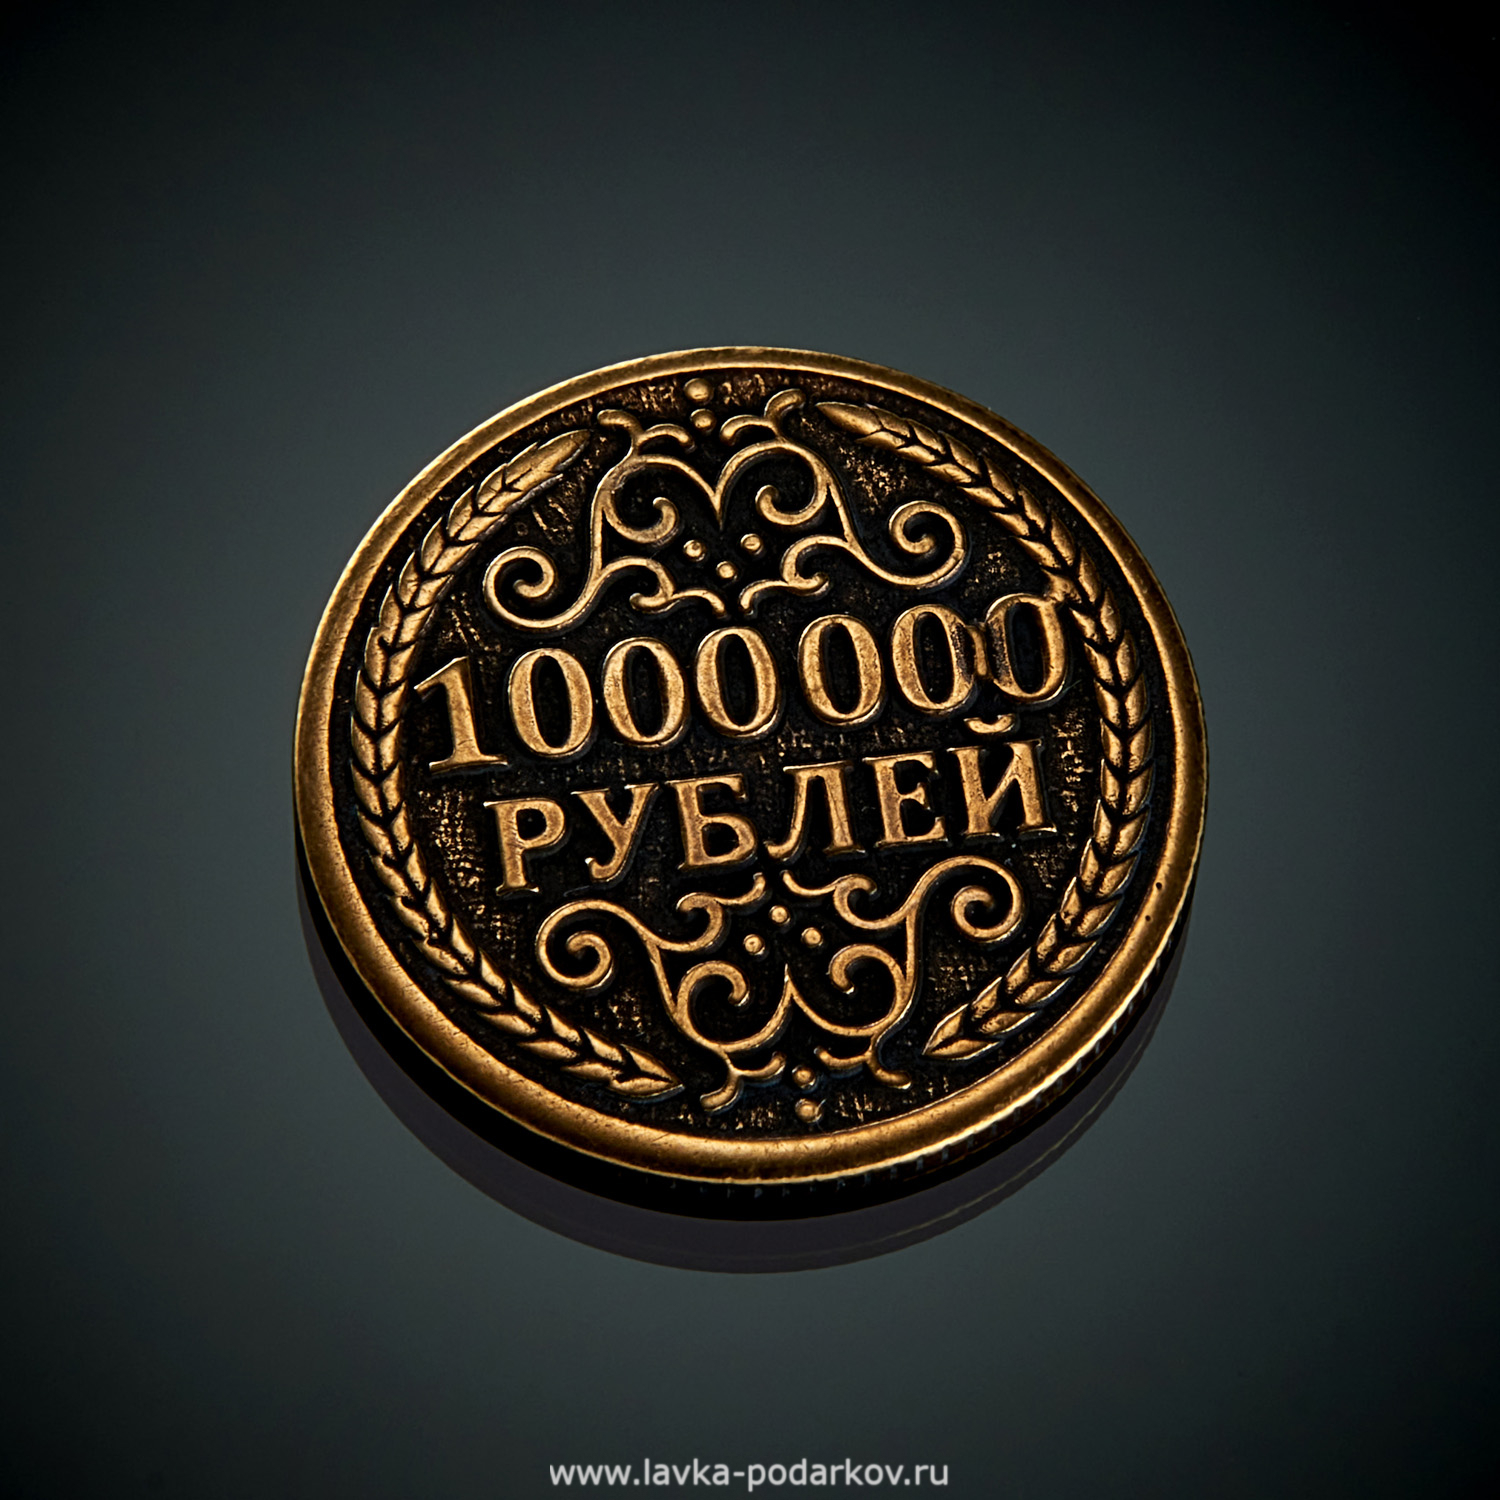 1000000 рублей продажа. Монета миллион рублей. Сувенирная монета 1000000 рублей. Железная монета 1000000 рублей. Монета 1 000 000 рублей.